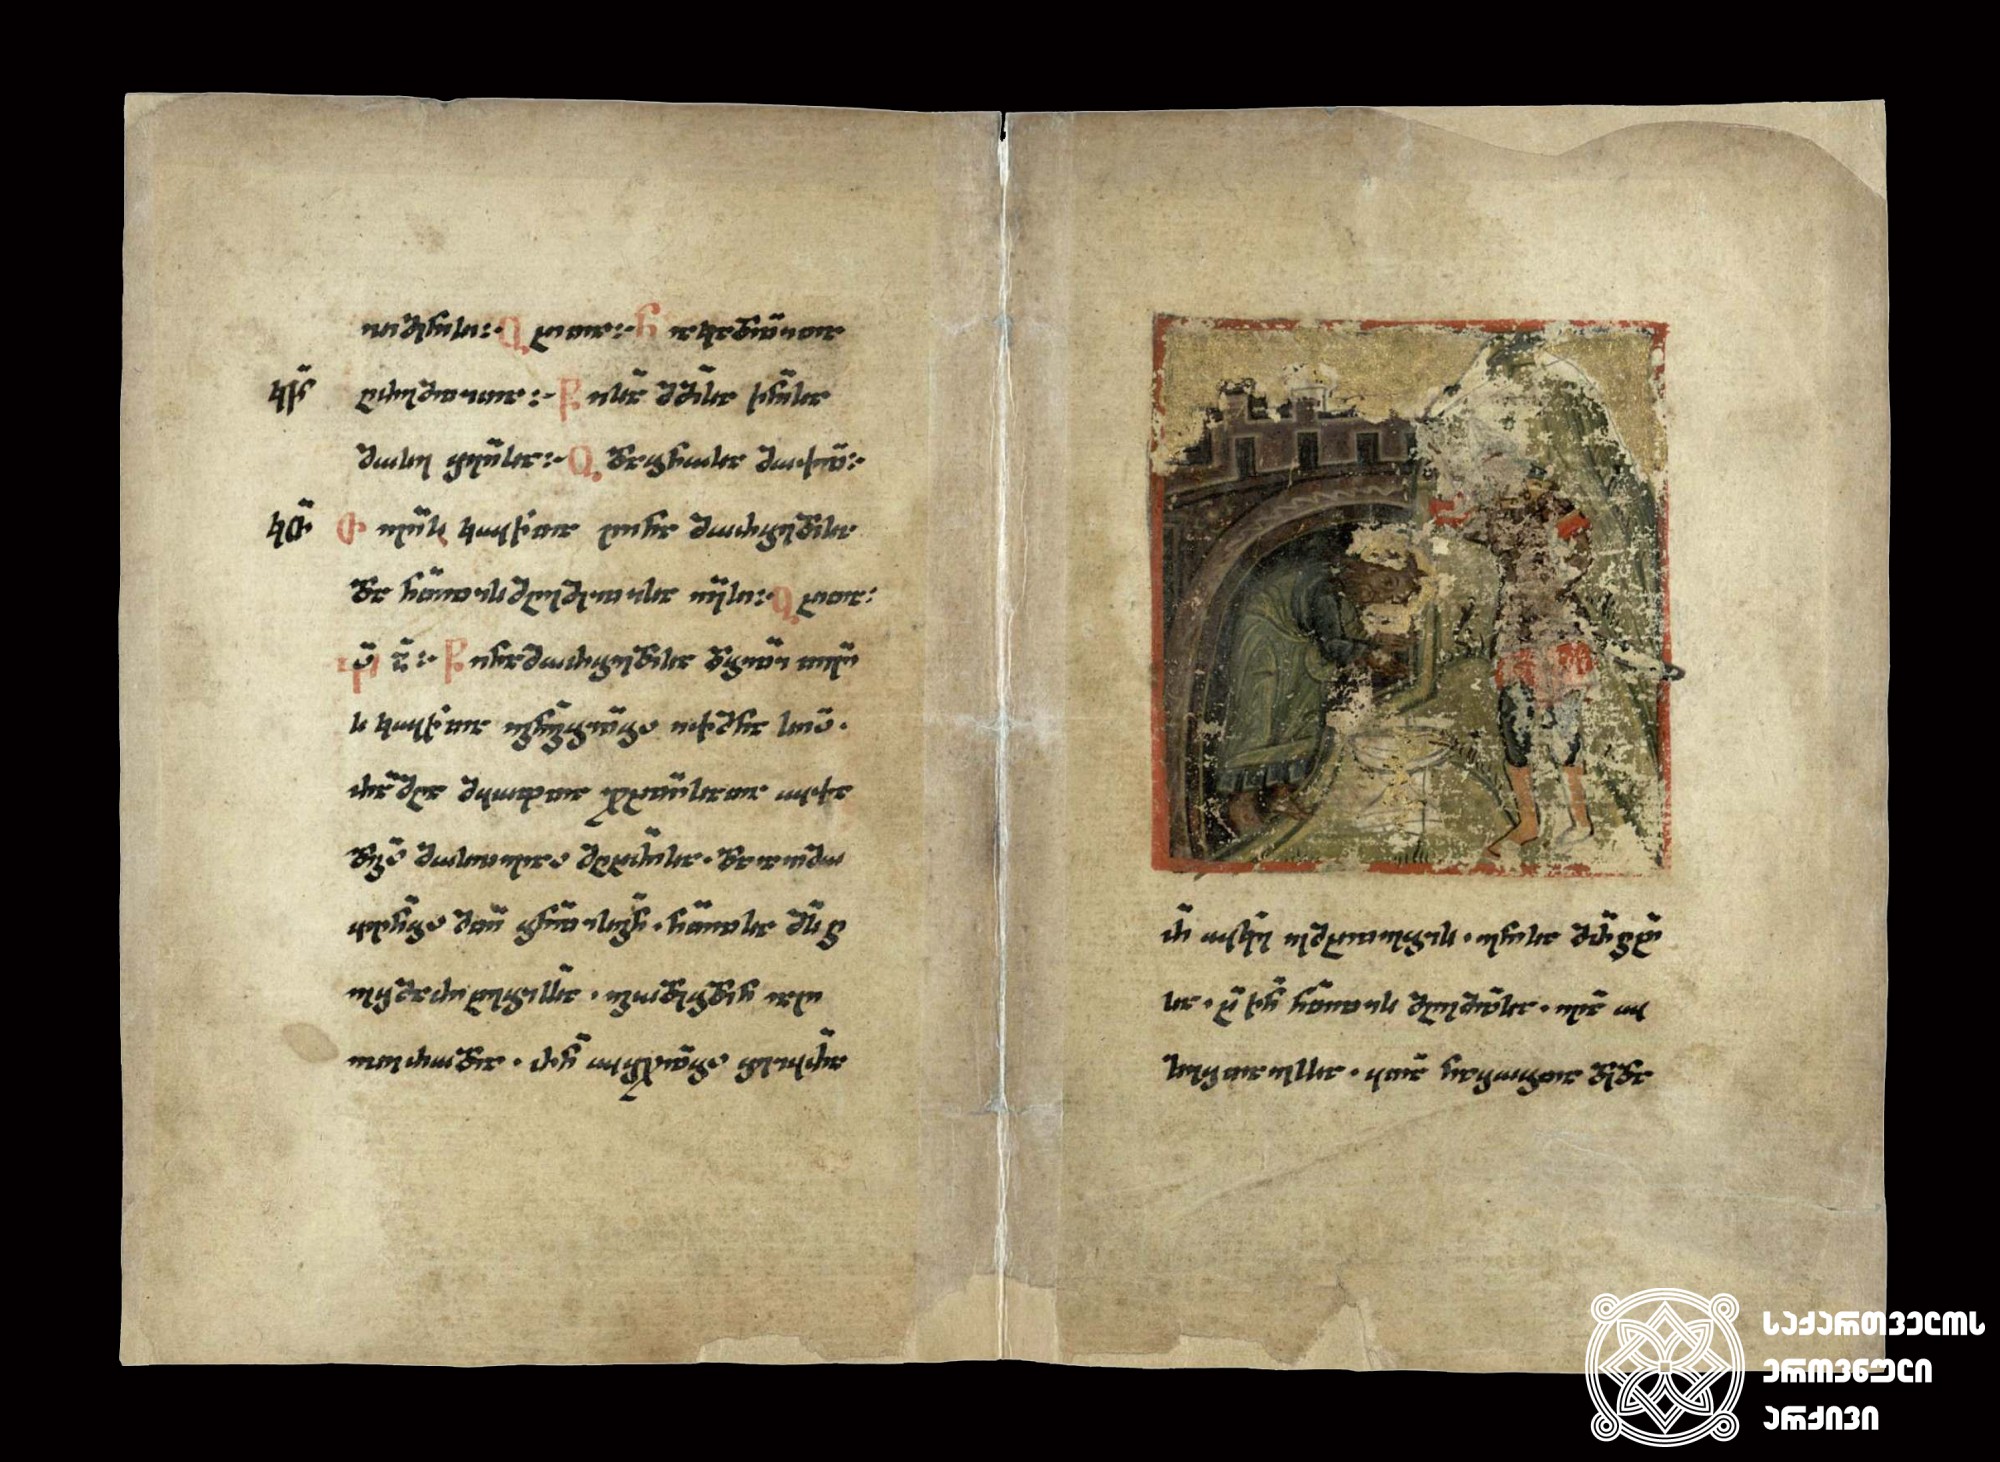 ნუსხური. ლიტურგიკული კრებული, XVI-XVII საუკუნეები. <br>
Nuskhuri script. The Liturgical collection, 16ᵗʰ-17ᵗʰ centuries.